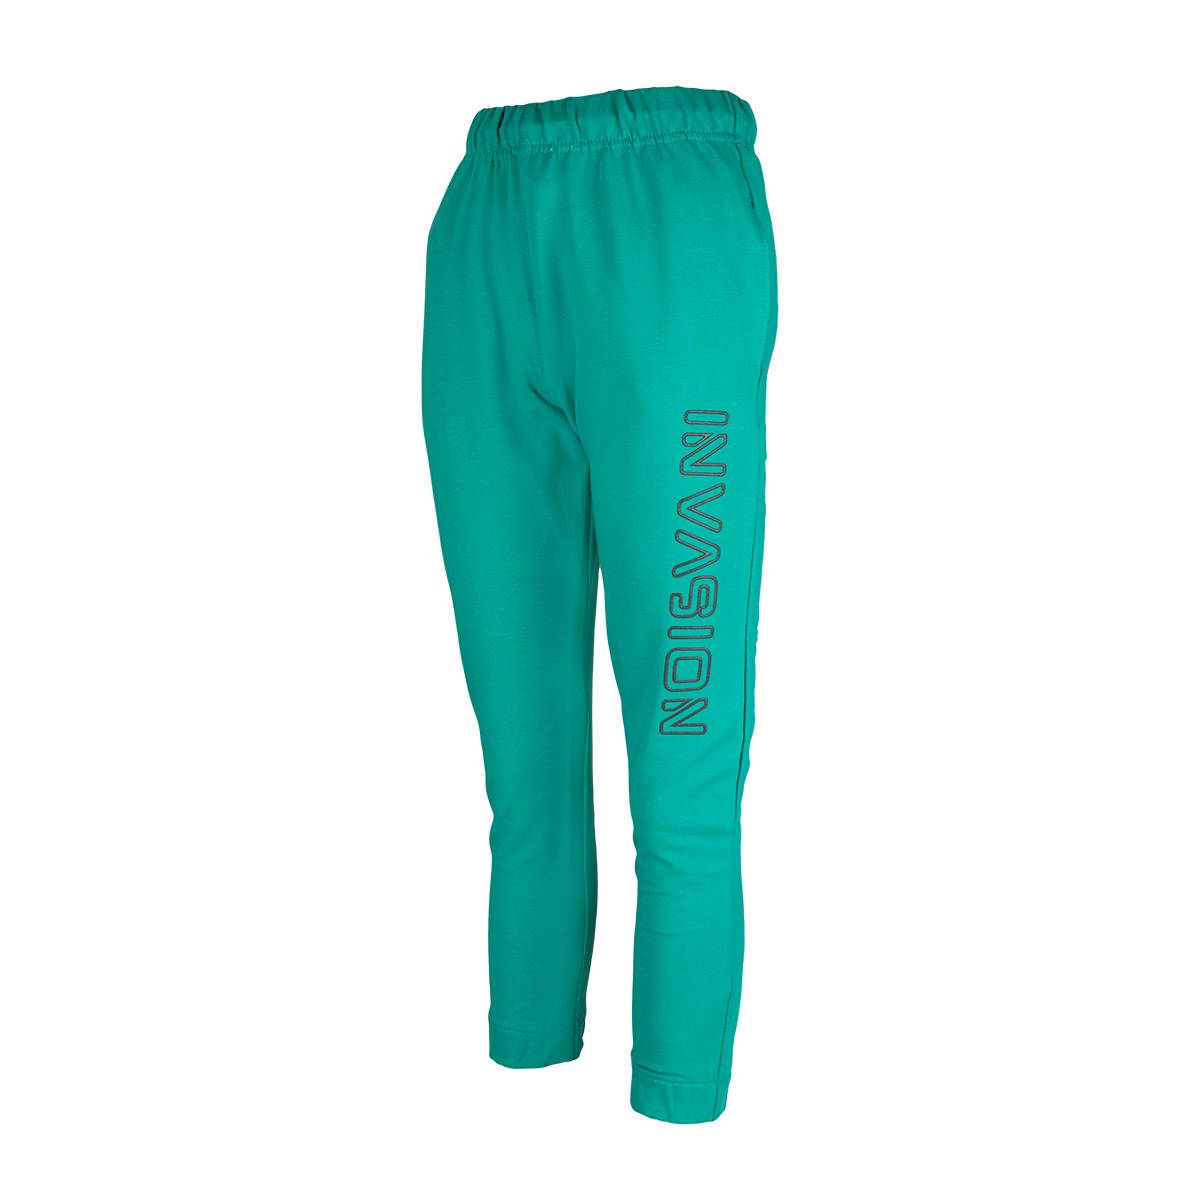 Spodnie dresowe dla chłopca, kolor zielony, aplikacja na nogawce INVASION, Tup Tup